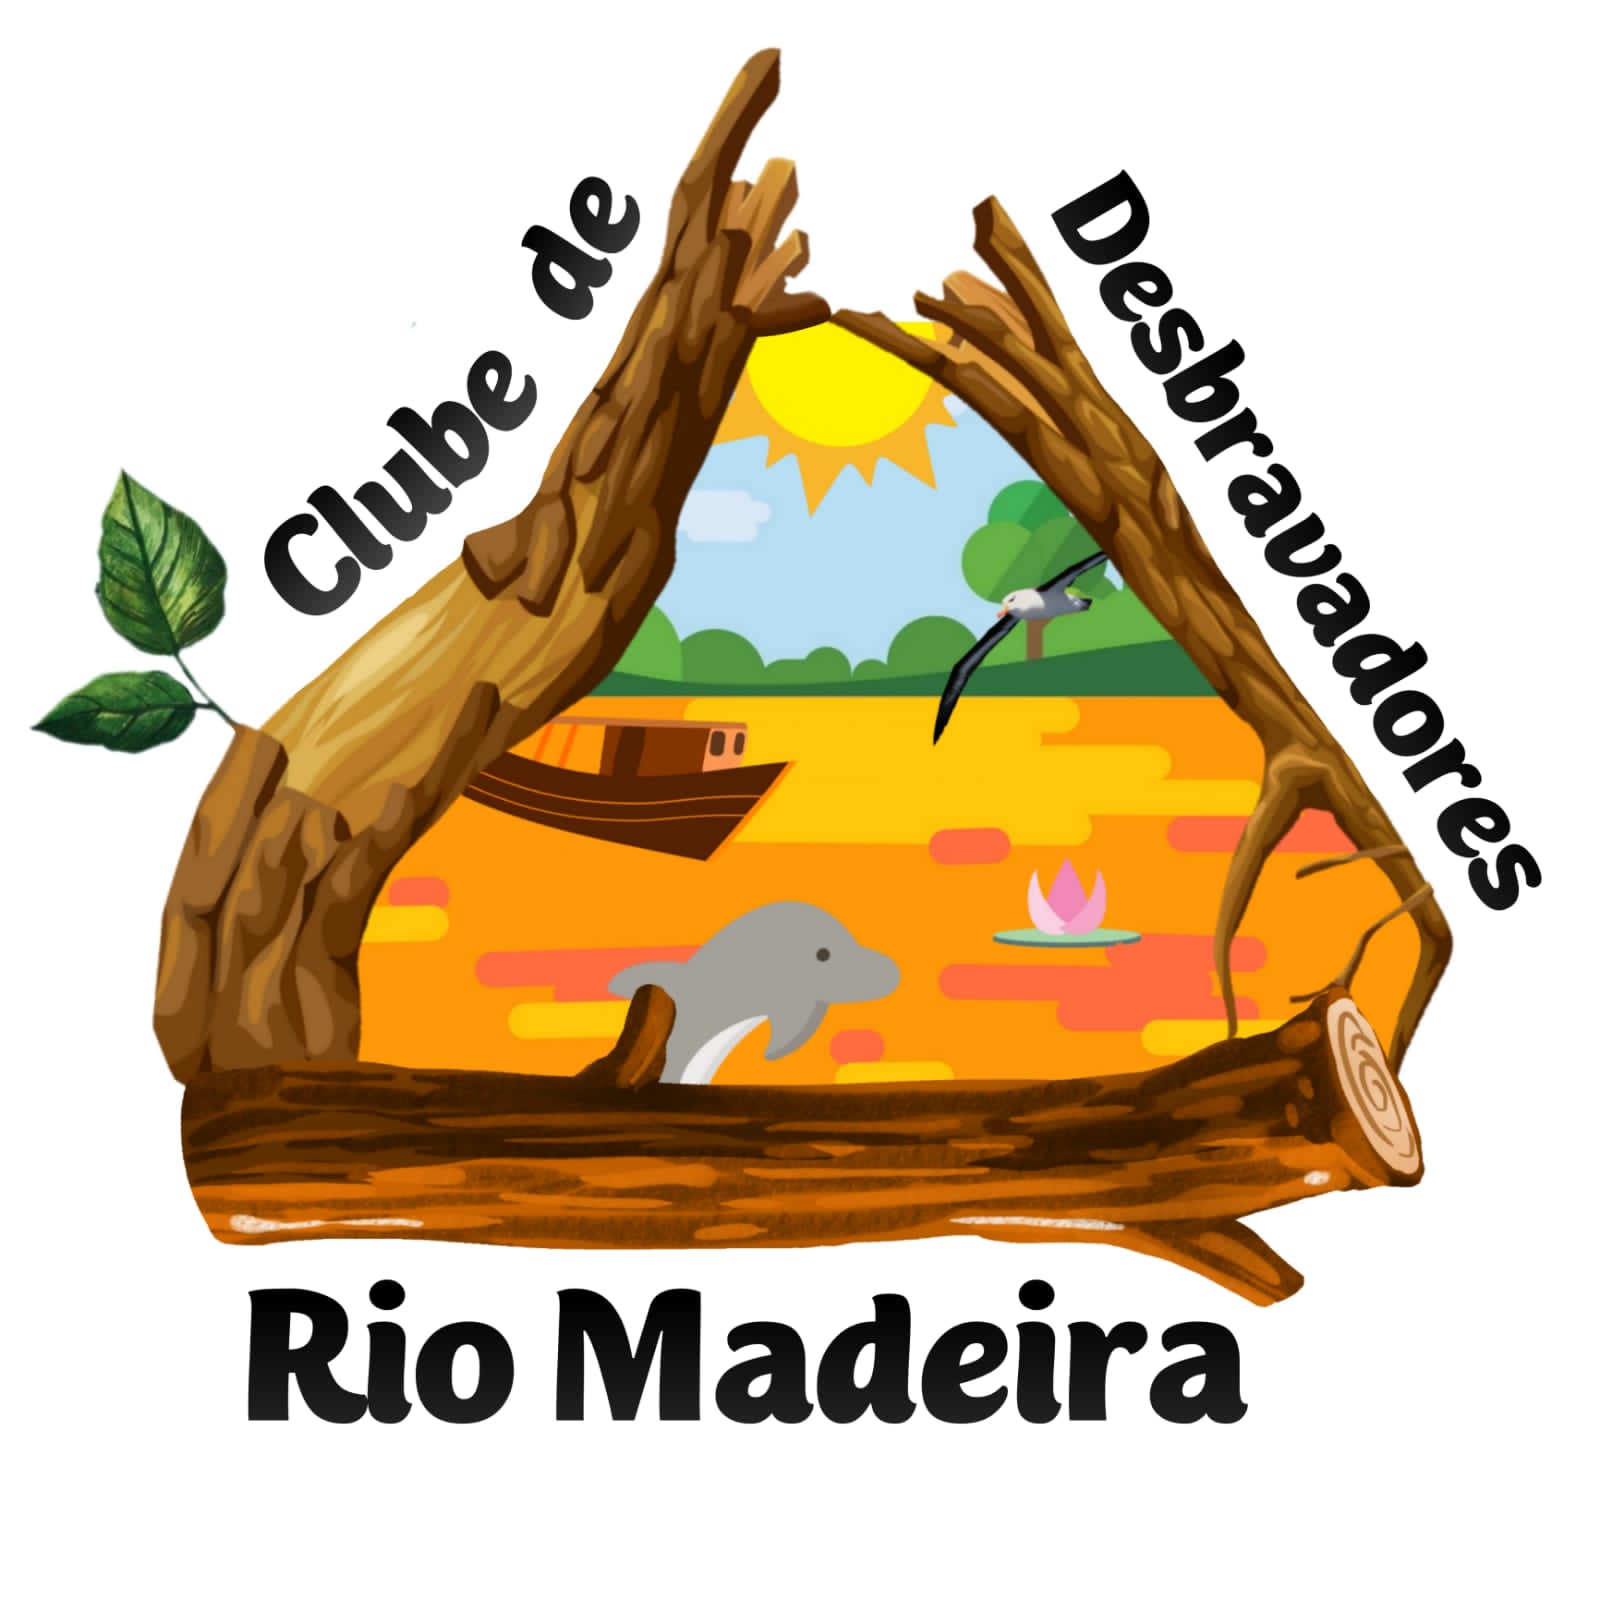 Rio Madeira